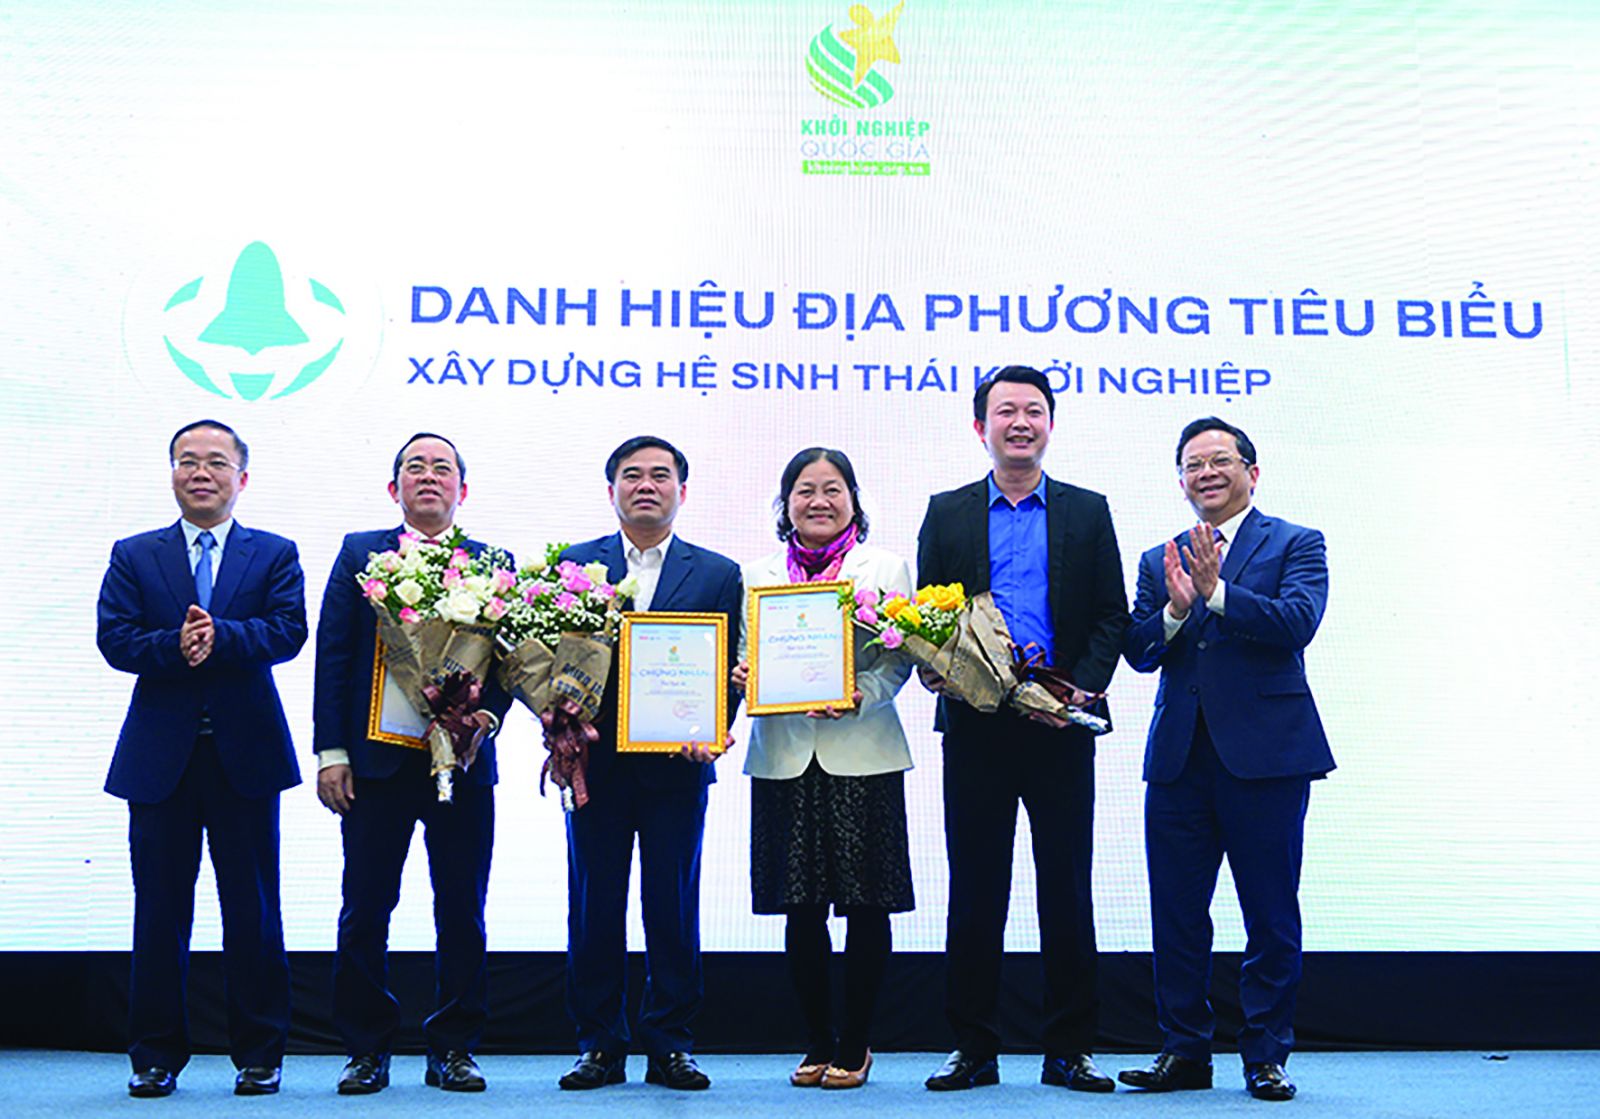  Ông Bùi Trung Nghĩa – Phó Chủ tịch VCCI và ông Nguyễn Đức Hiển – Phó Trưởng ban Kinh tế TW trao danh hiệu Địa phương tiêu biểu trong xây dựng hệ sinh thái khởi nghiệp. 